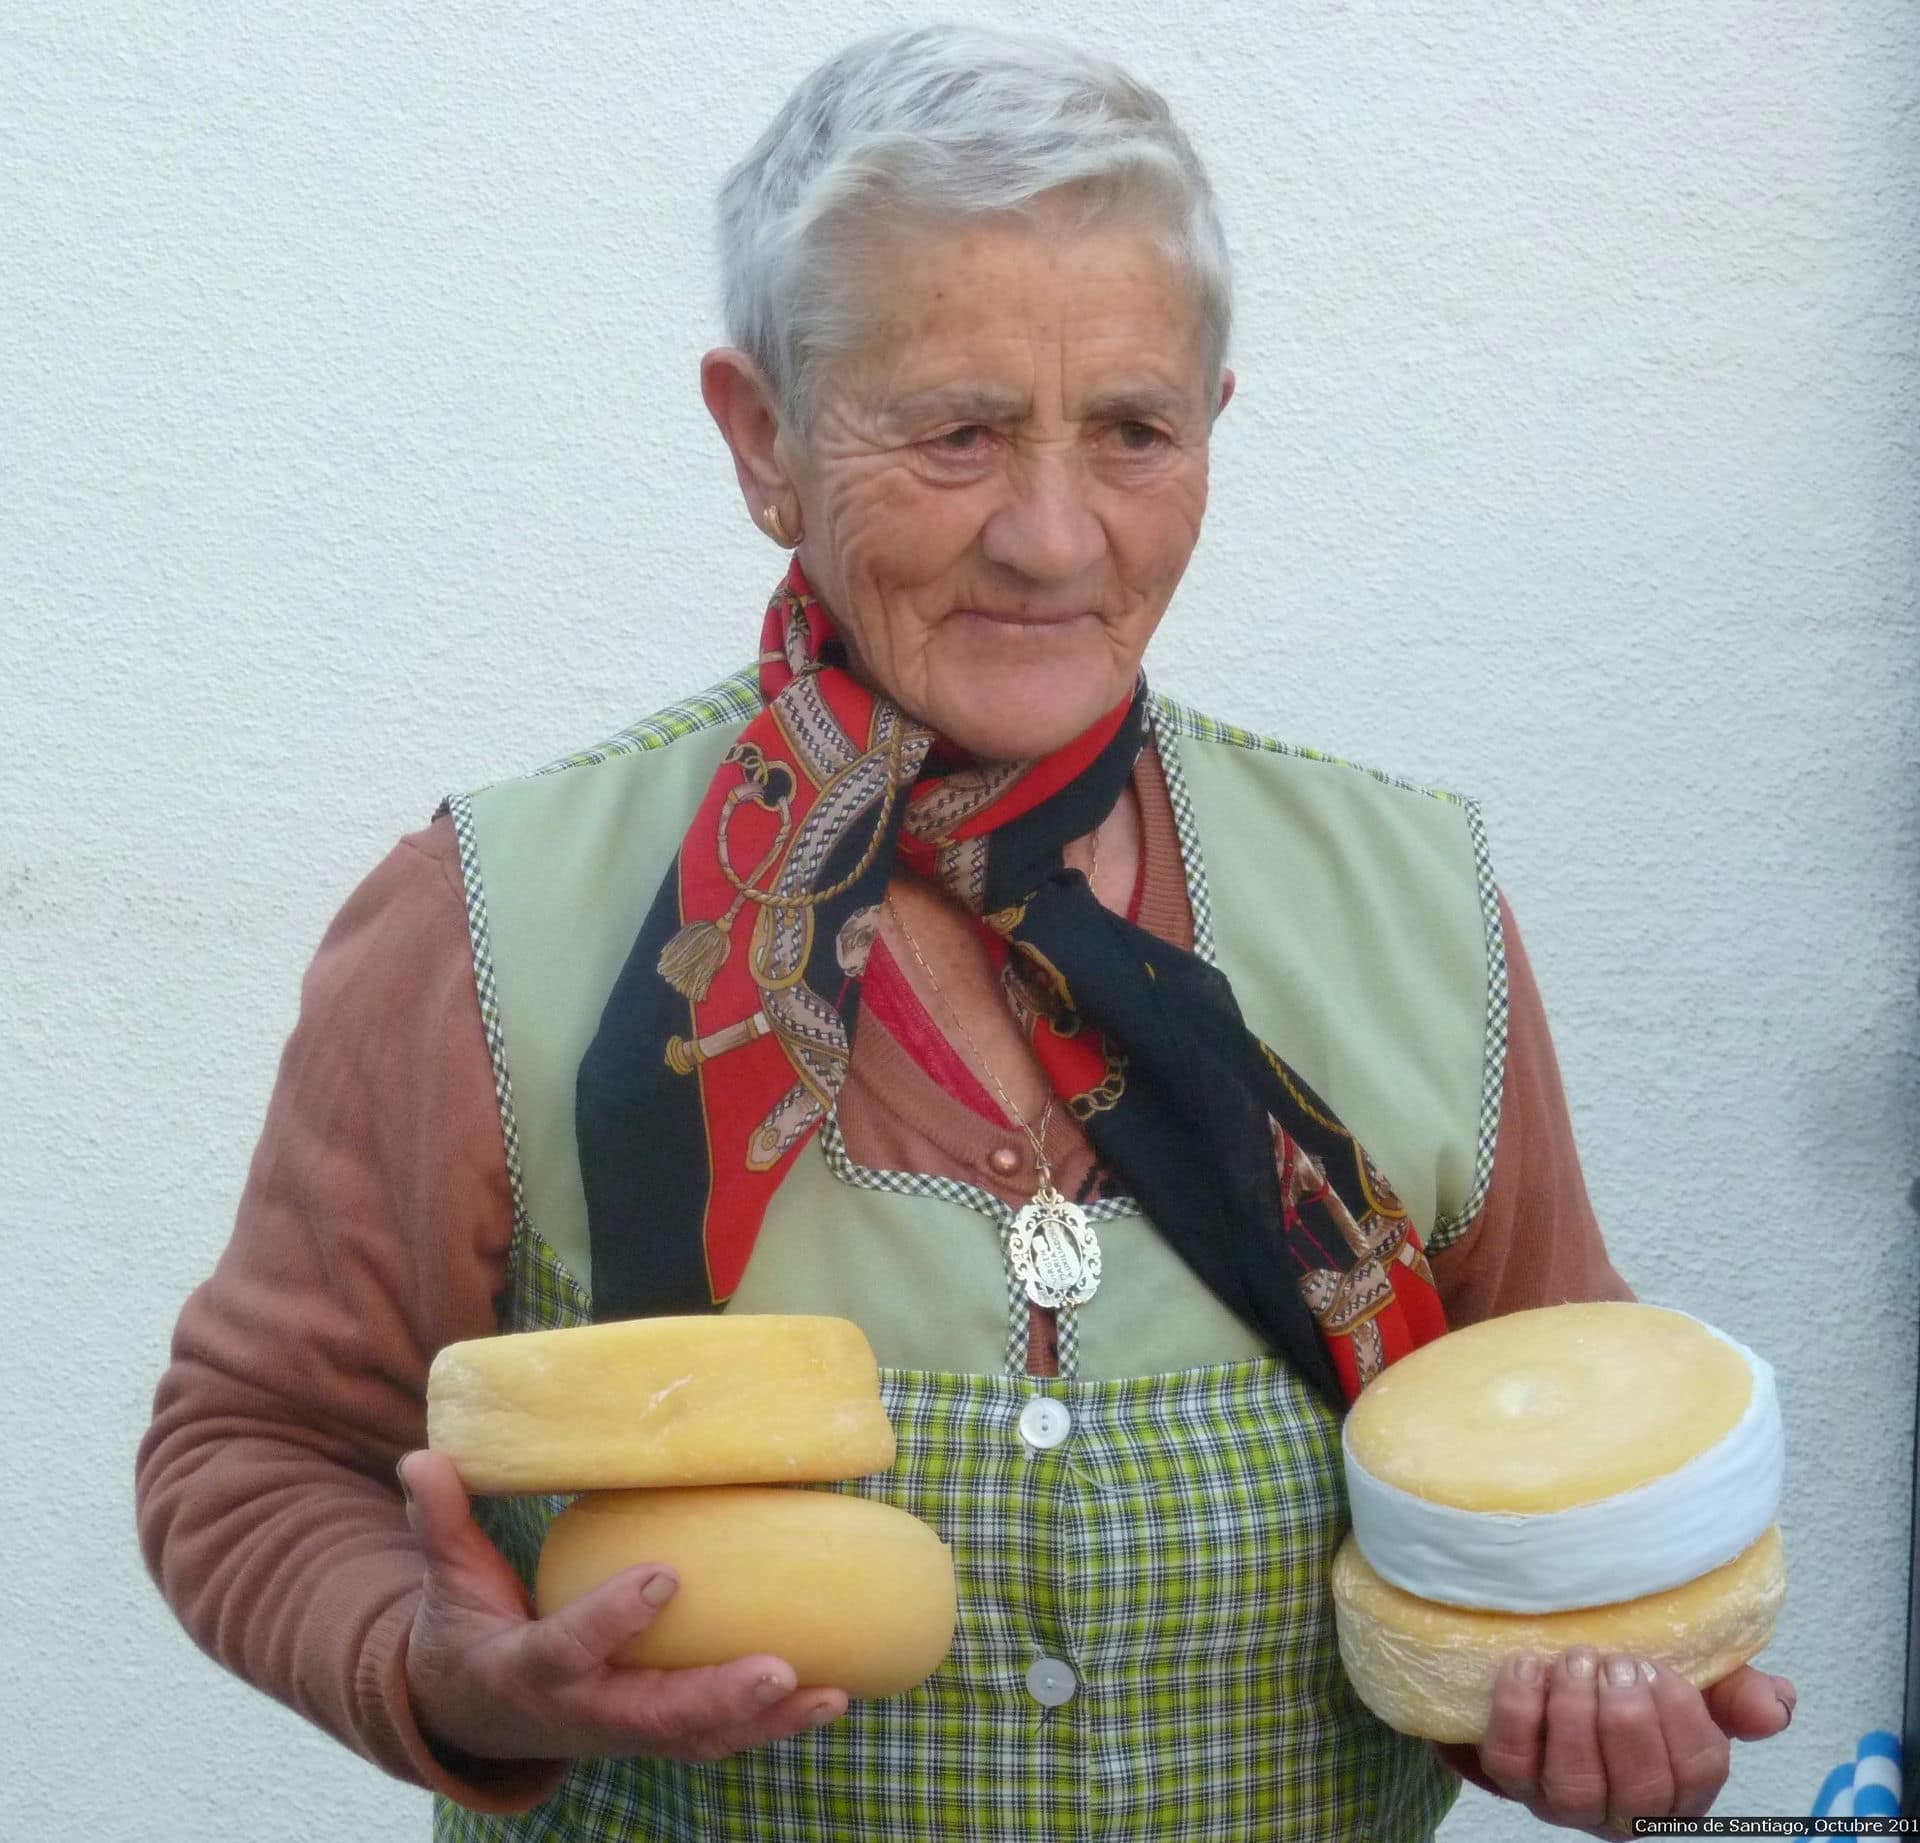 Popular Queso de Arzua cheese on the Camino de Santiago